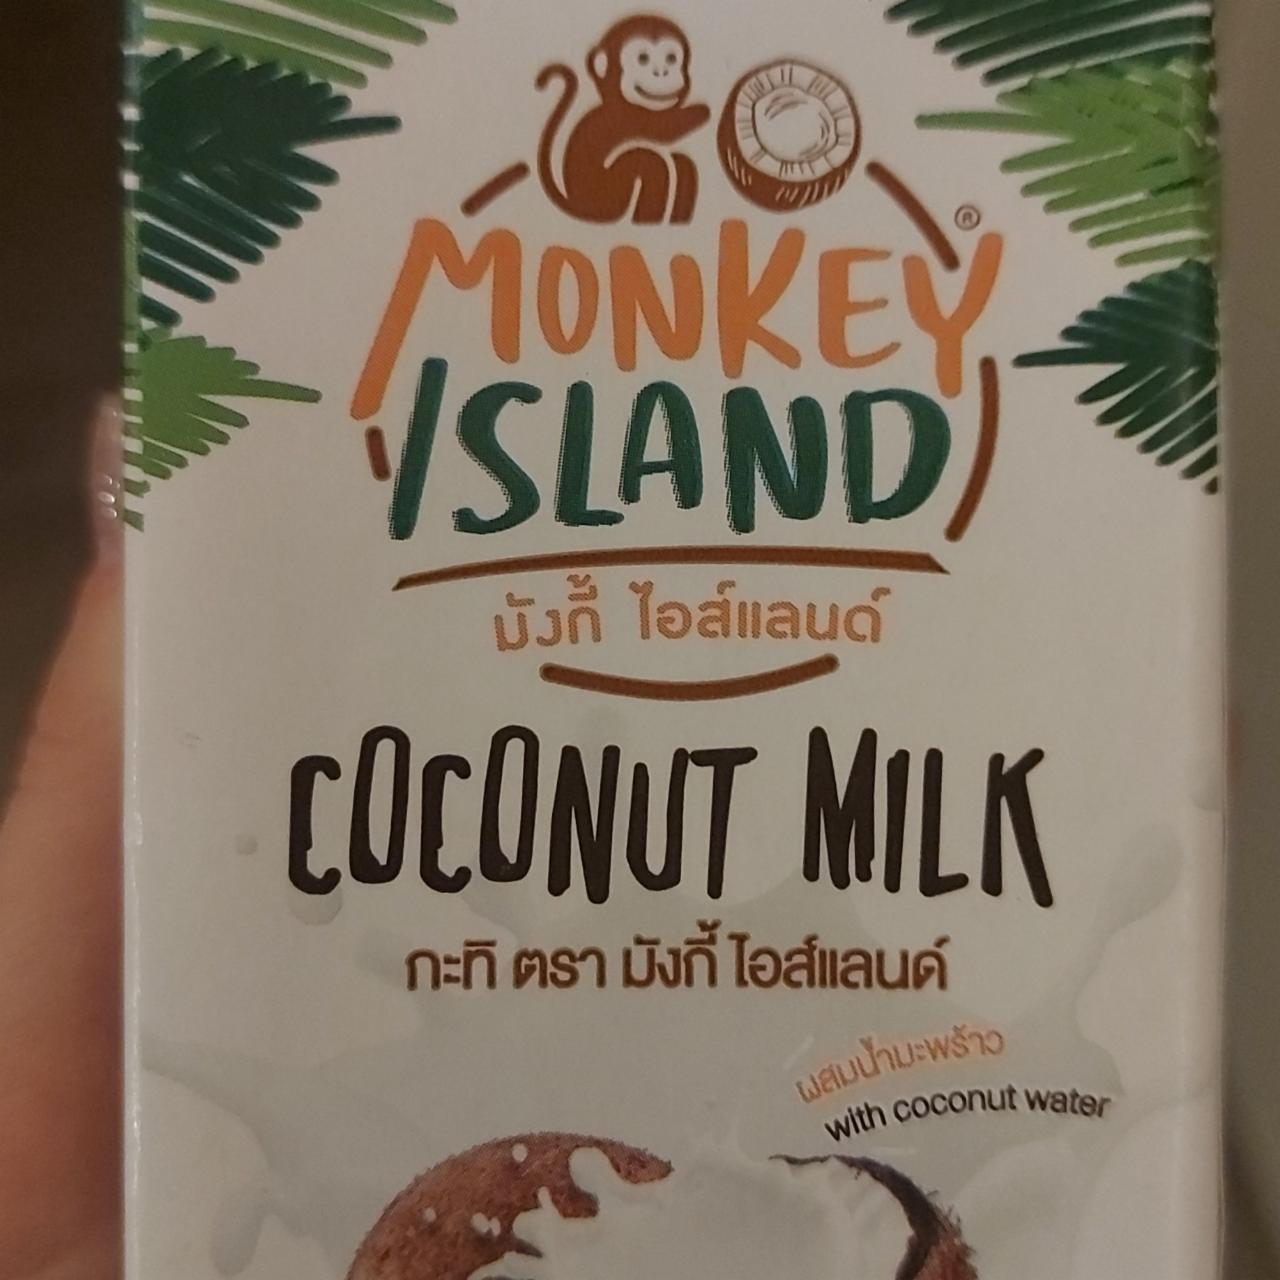 Фото - кокосовое молоко Monkey Island